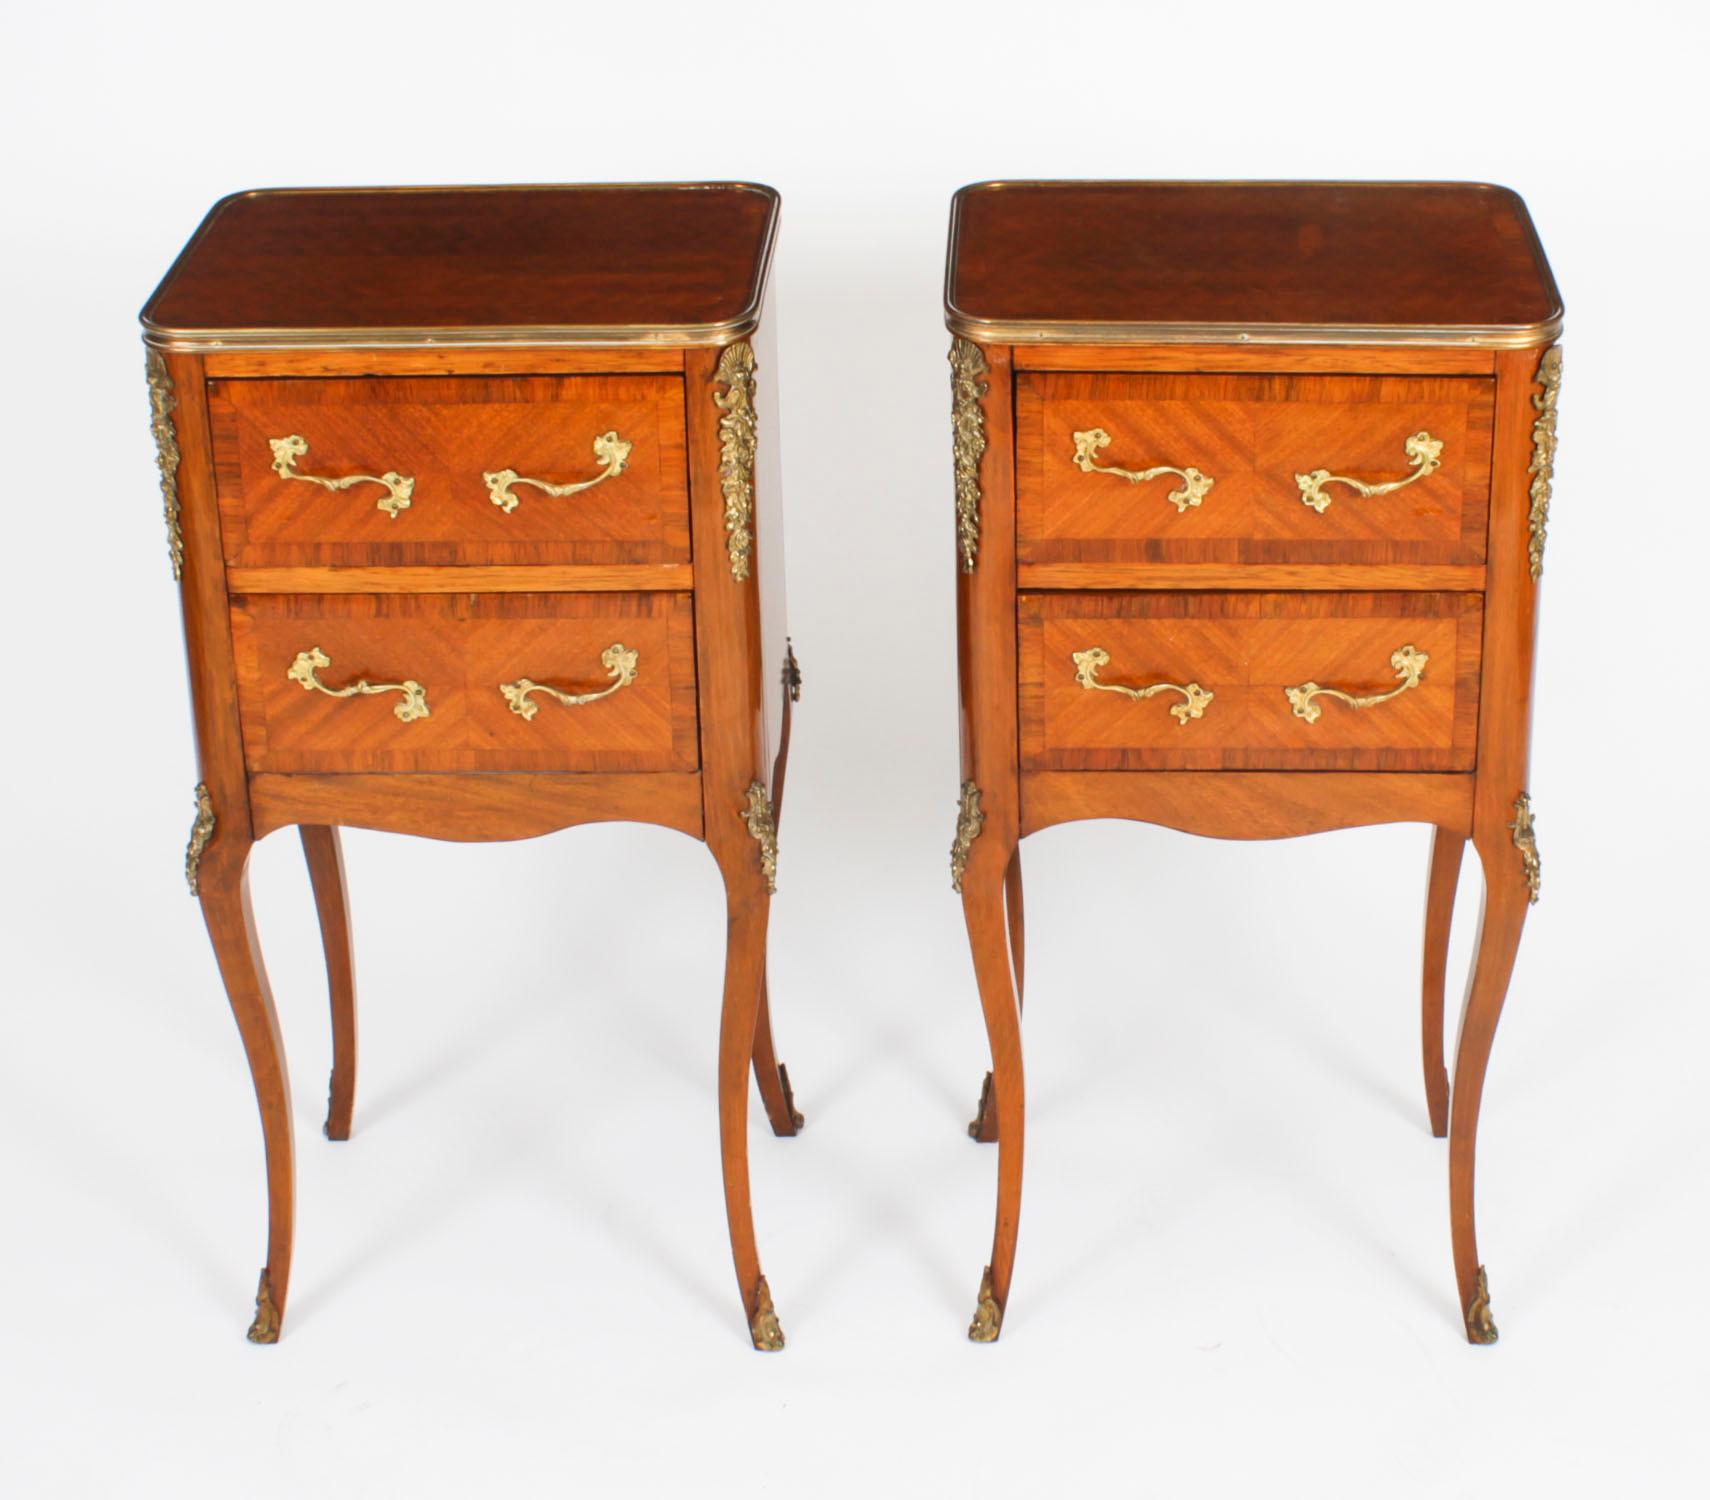 Il s'agit d'une élégante paire de tables de chevet de style Louis XVI en bois de Violette et bronze doré, datant d'environ 1870.
 
Ils sont dotés de plateaux rectangulaires façonnés et ornés de bandes en bronze doré et de décorations en parquet. Ils